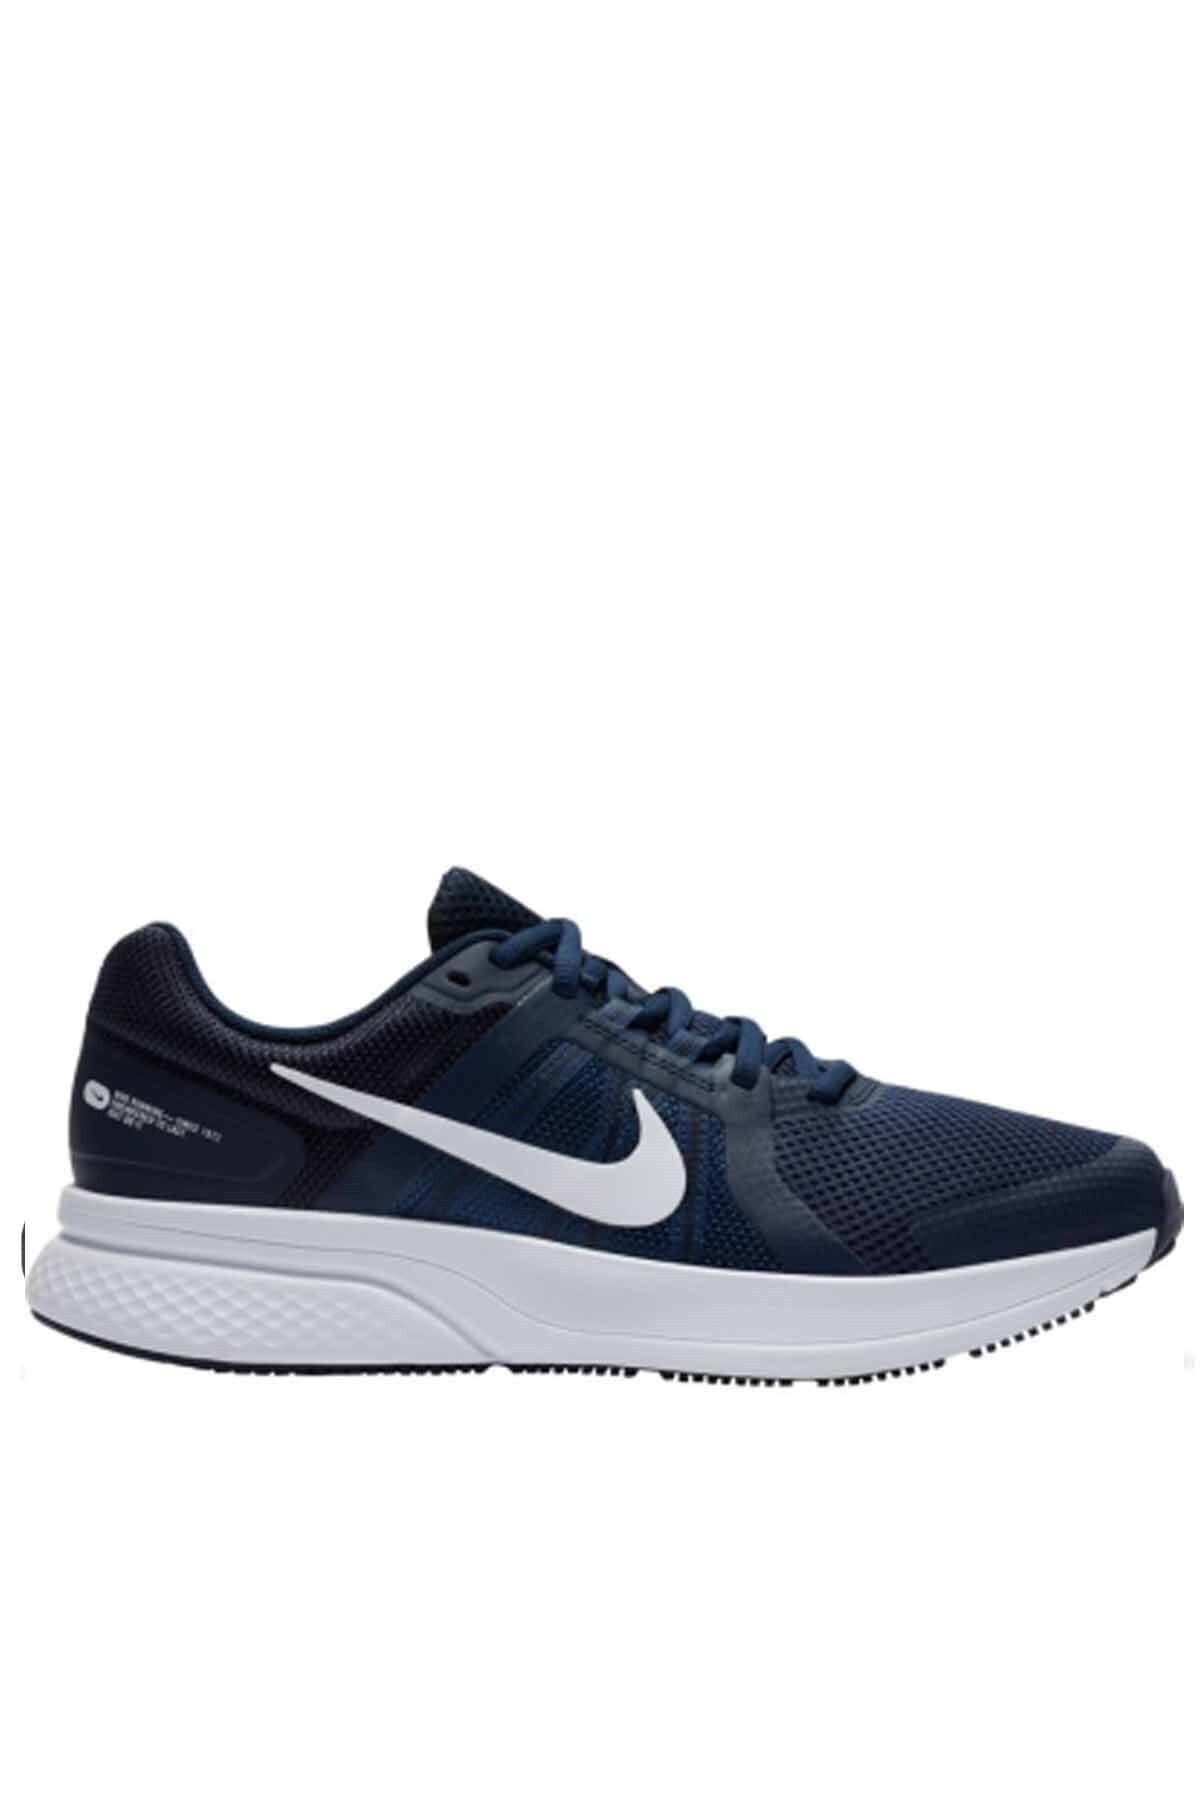 Nike Erkek Yürüyüş Koşu Ayakkabı Cu3517-400-mavi